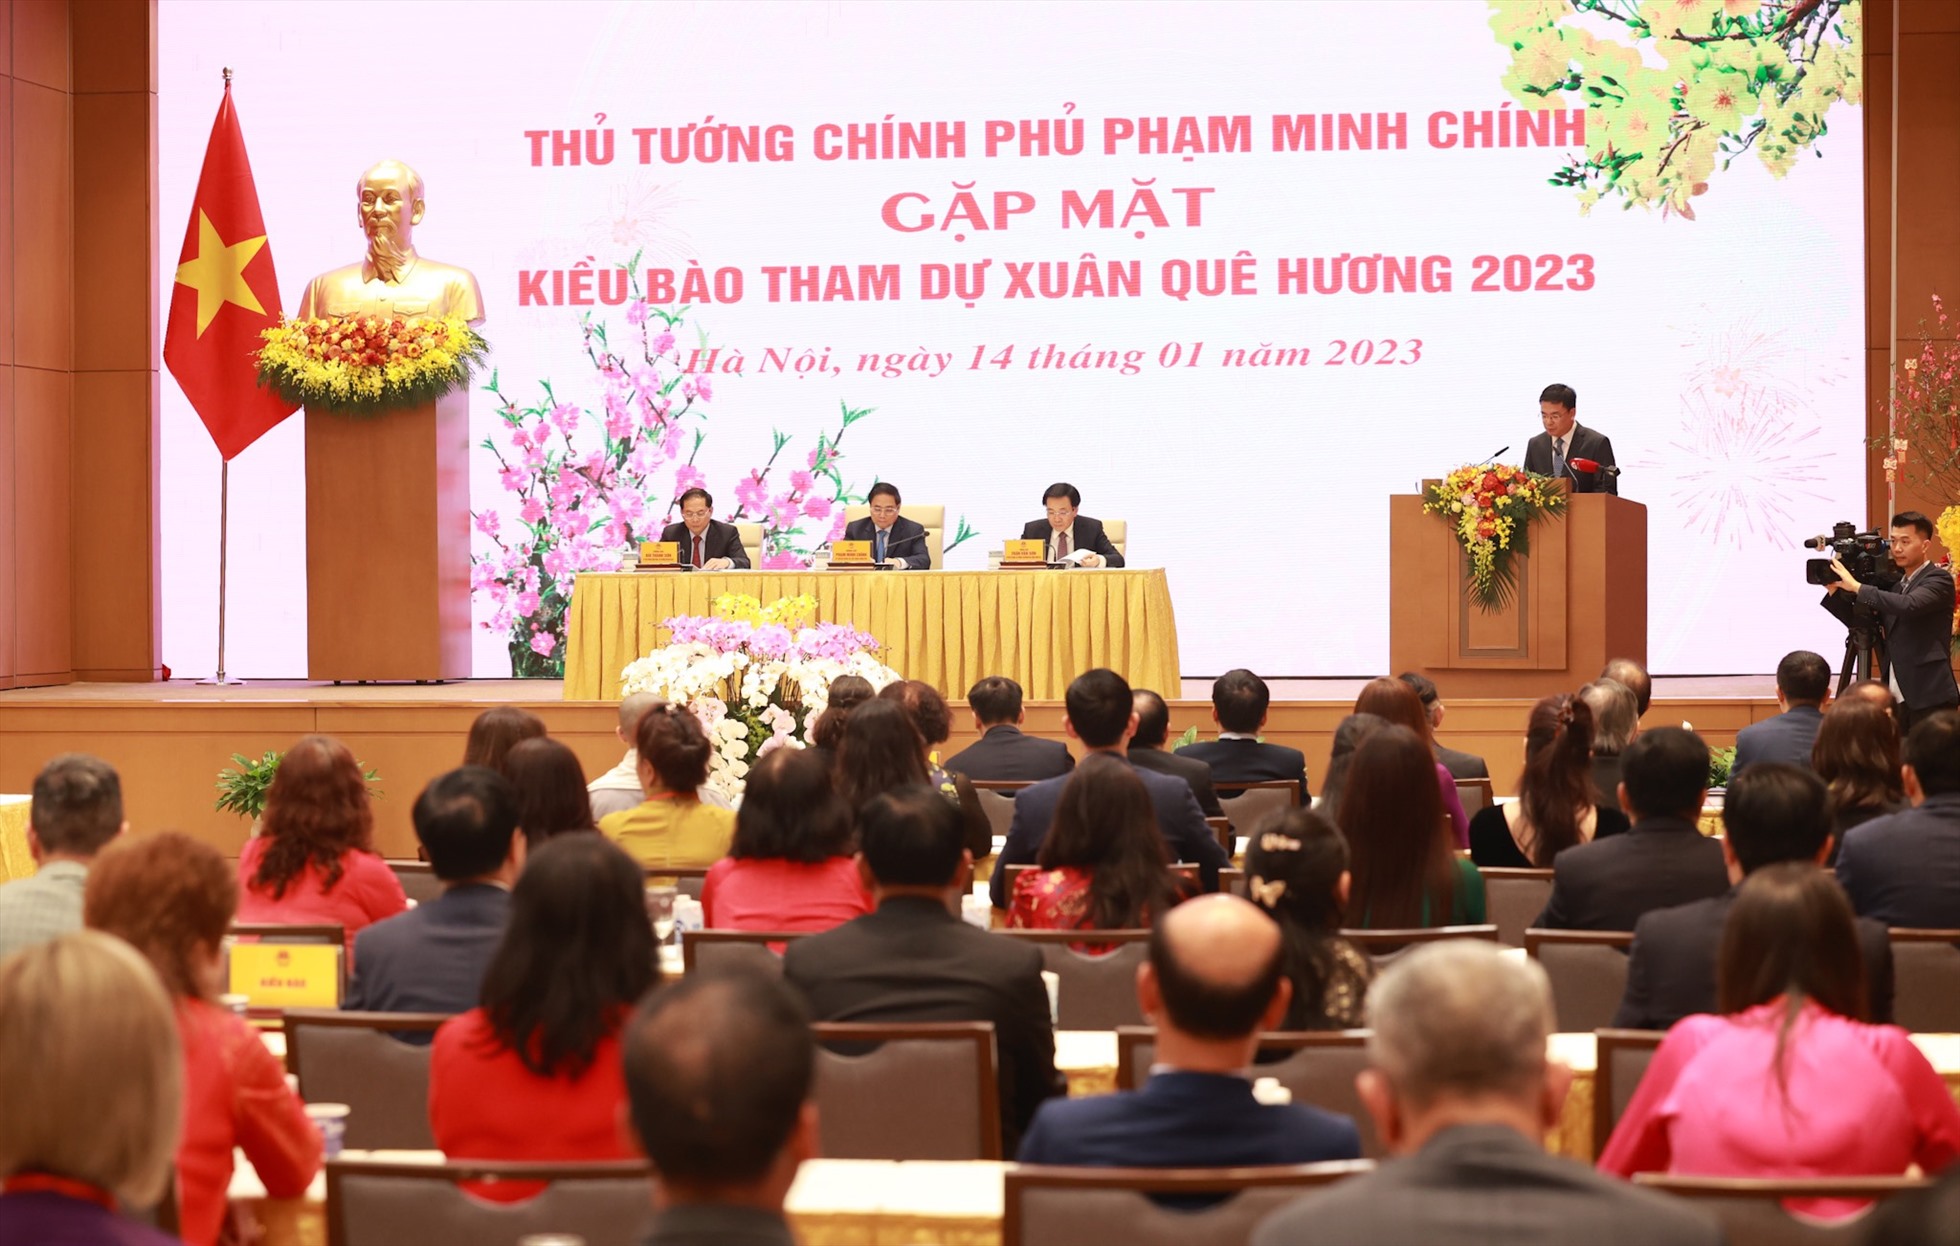 Thủ tướng tiếp đoàn kiều bào tiêu biểu là một trong số các hoạt động trong khuôn khổ chương trình Xuân Quê hương 2023. Ảnh: Hải Nguyễn